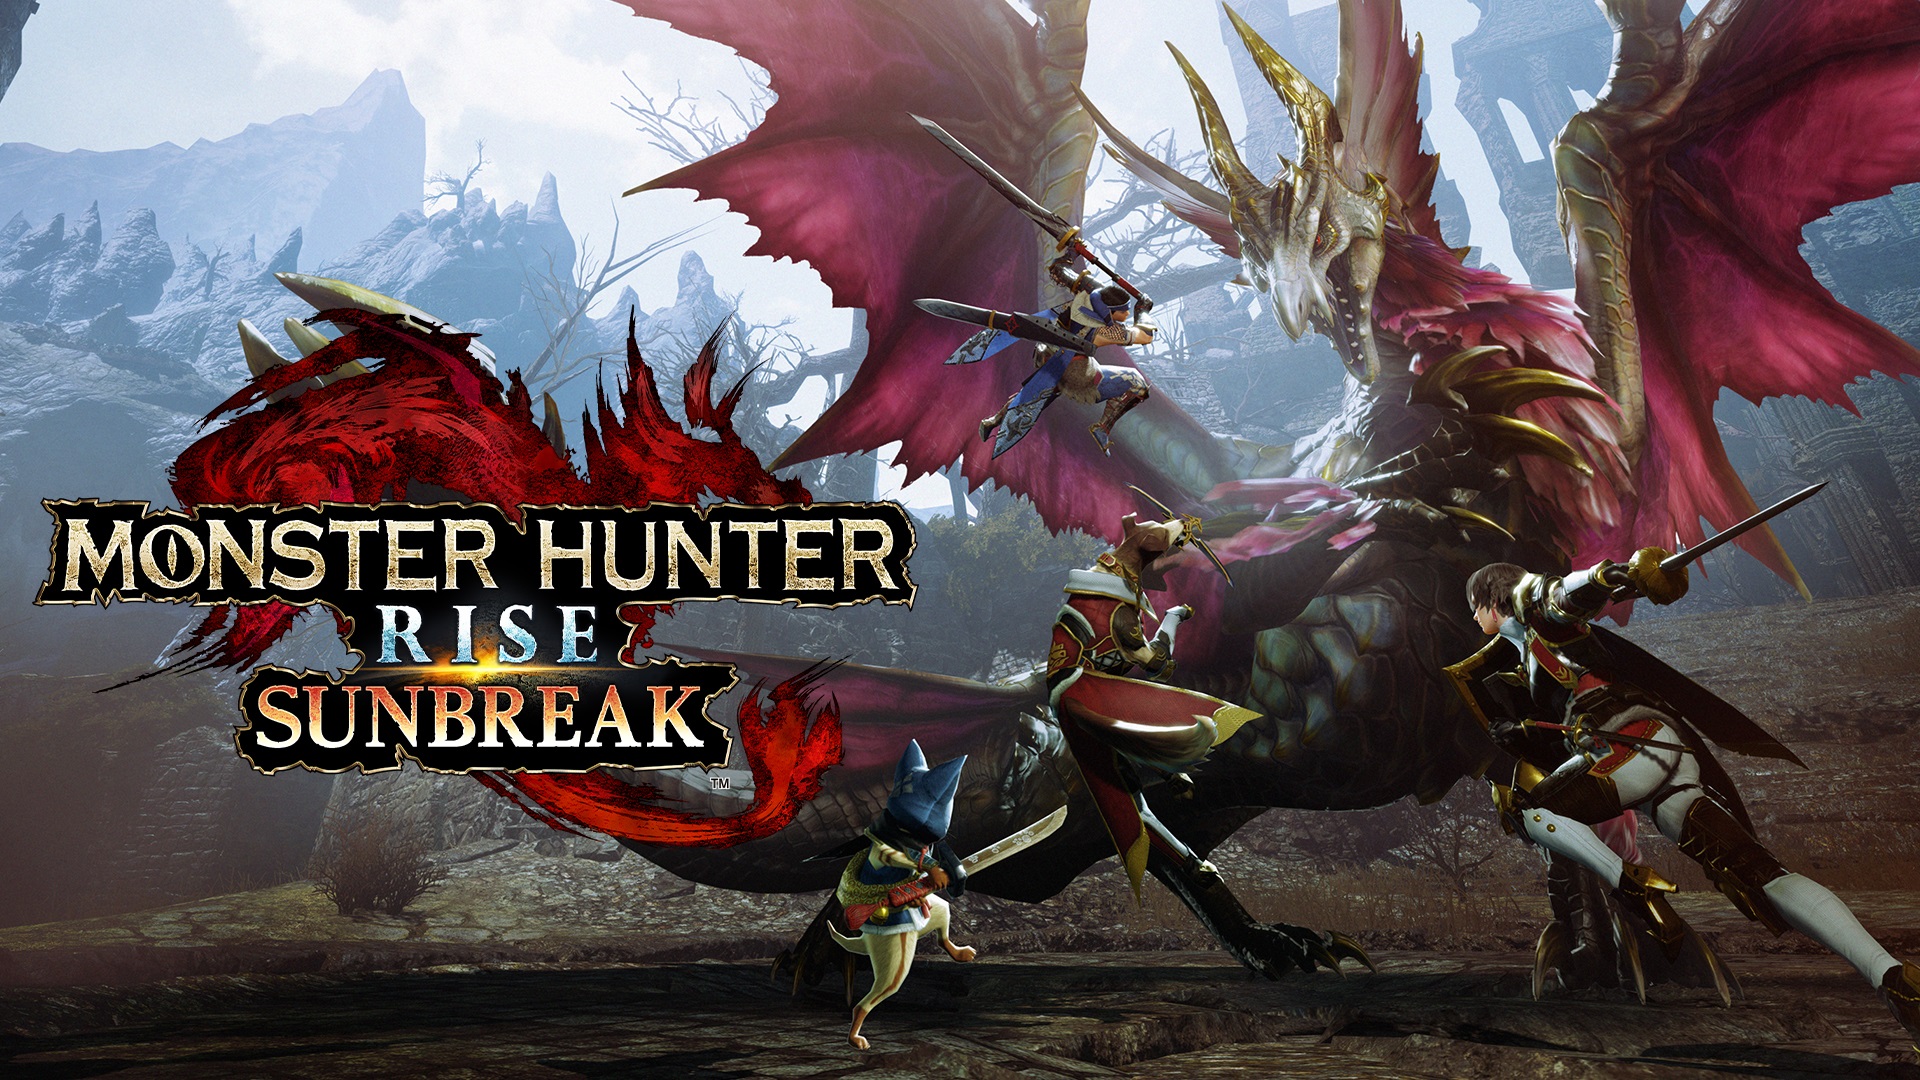 Lleva tu caza al siguiente nivel en Monster Hunter Rise: Sunbreak, disponible hoy